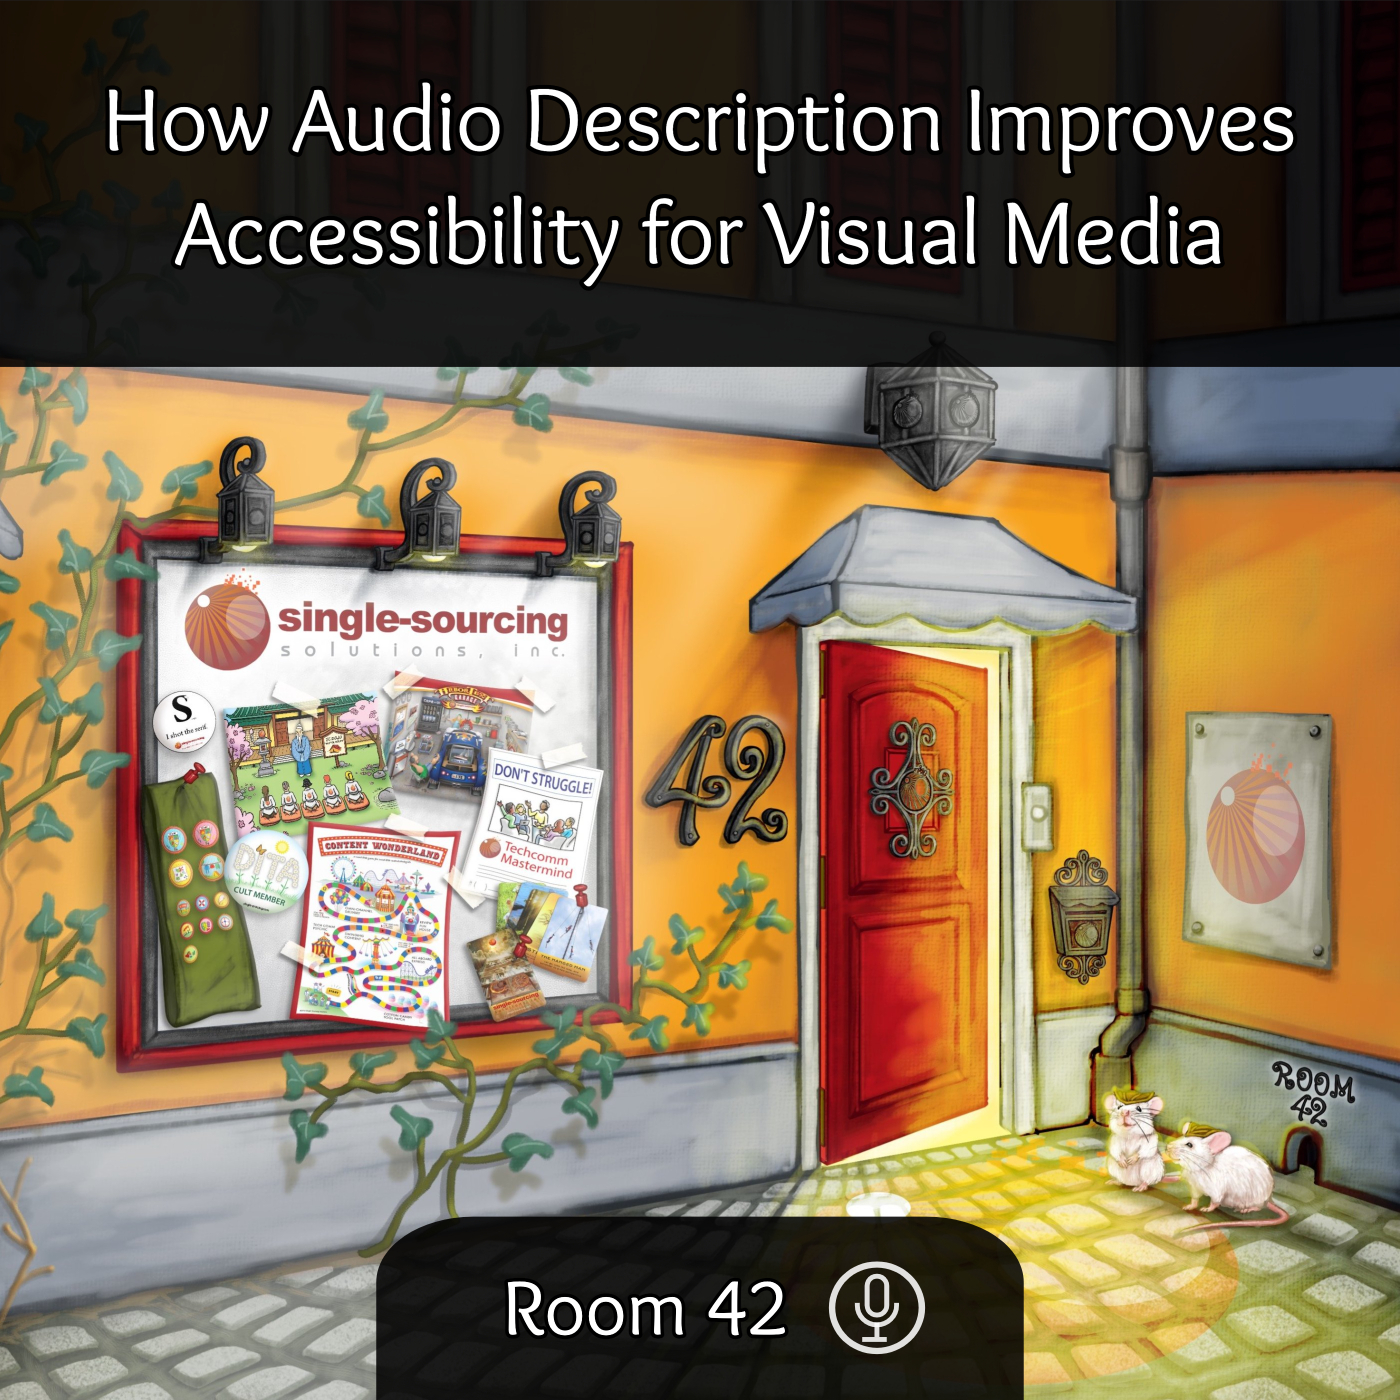 Audio Description Improves Accessibility